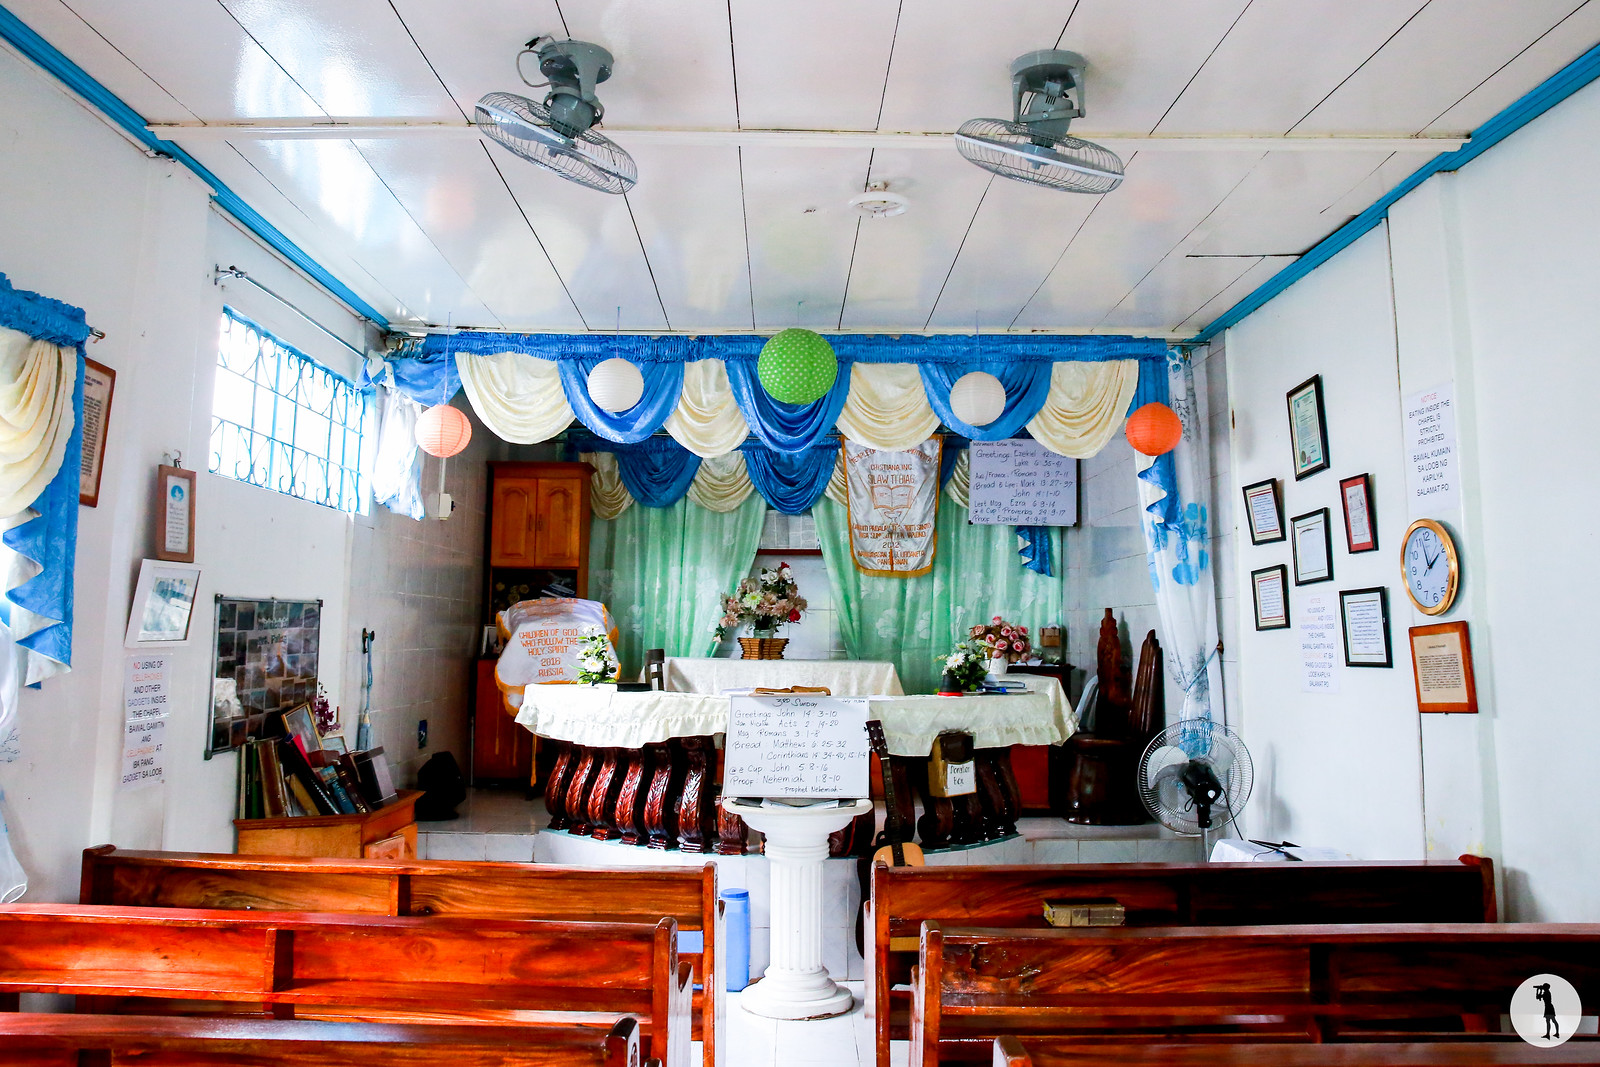 Travel to the Philippines: Chapel of the faith healer. Chapelle du guérisseur aux mains nues rencontrée lors du voyage aux Philippines.